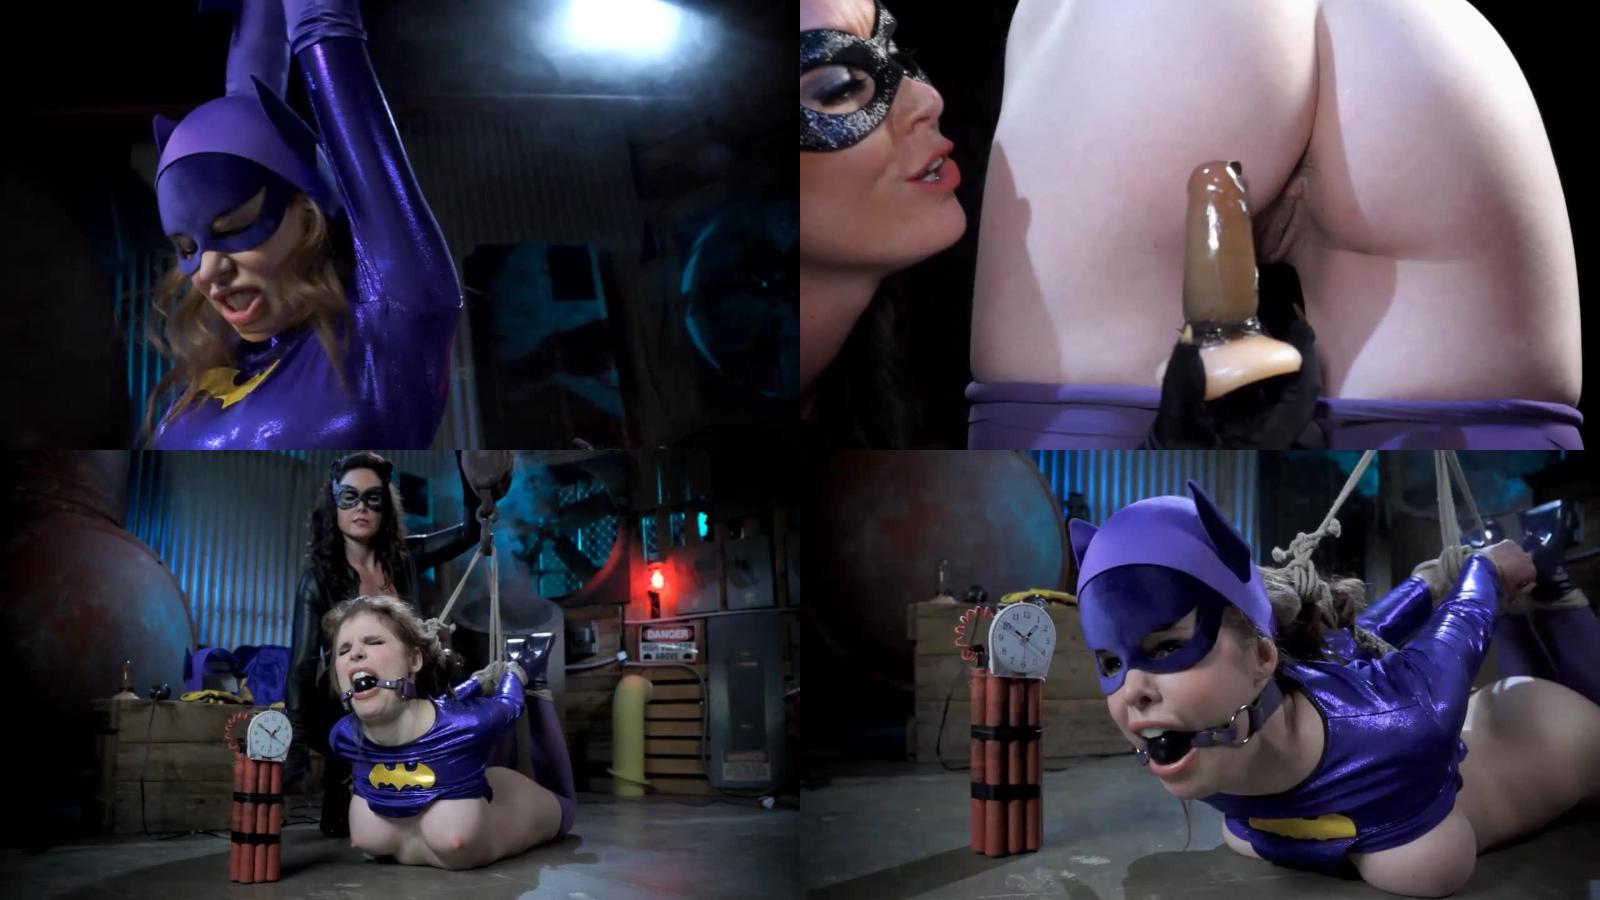 Christina Carter Superheroine – Batgirl Episode 2: Butt Catwoman